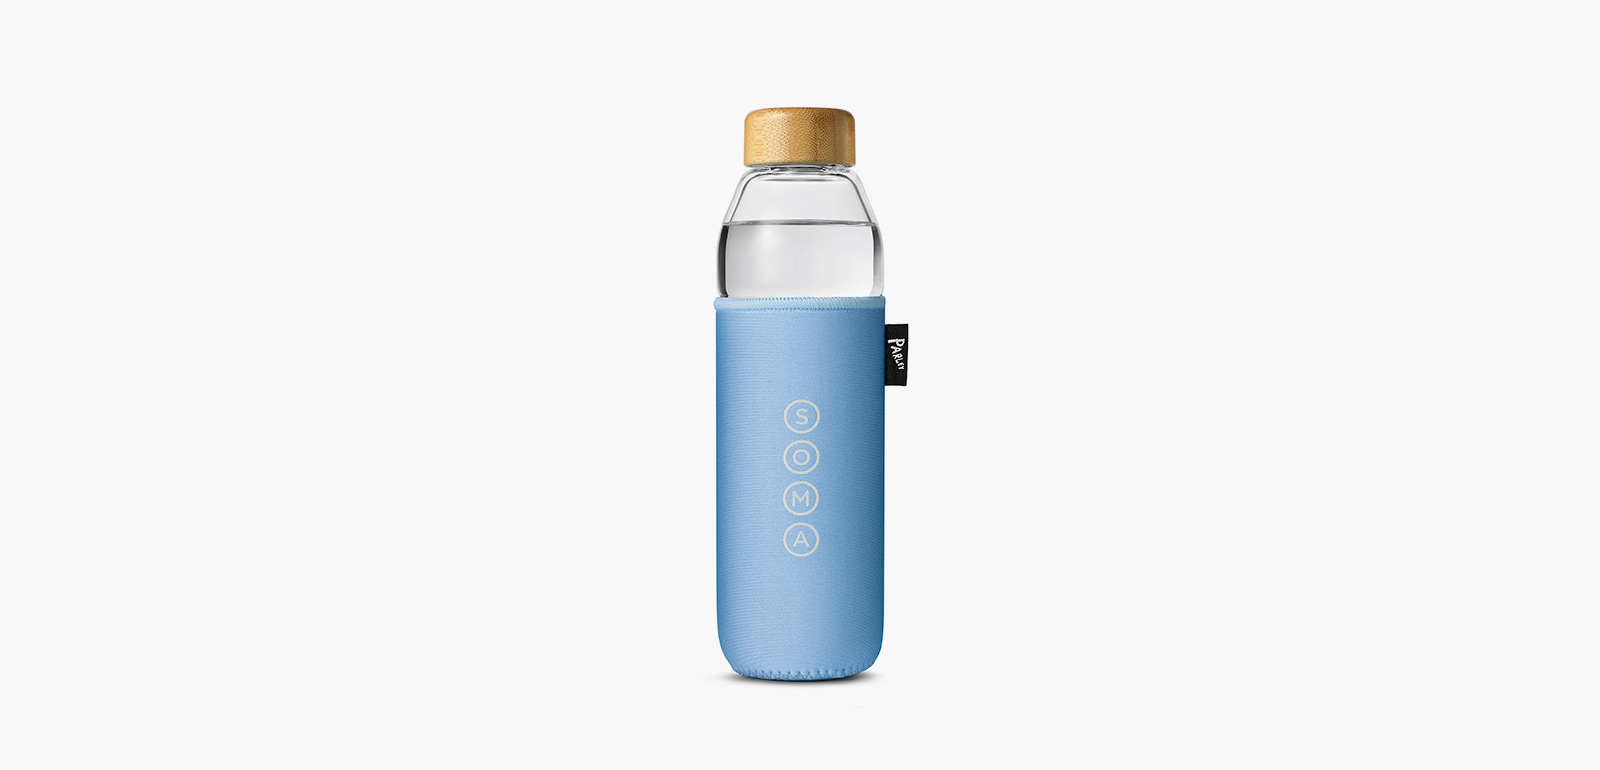 Soma Bottle, Sport, Cap, Glass, 17 Ounce